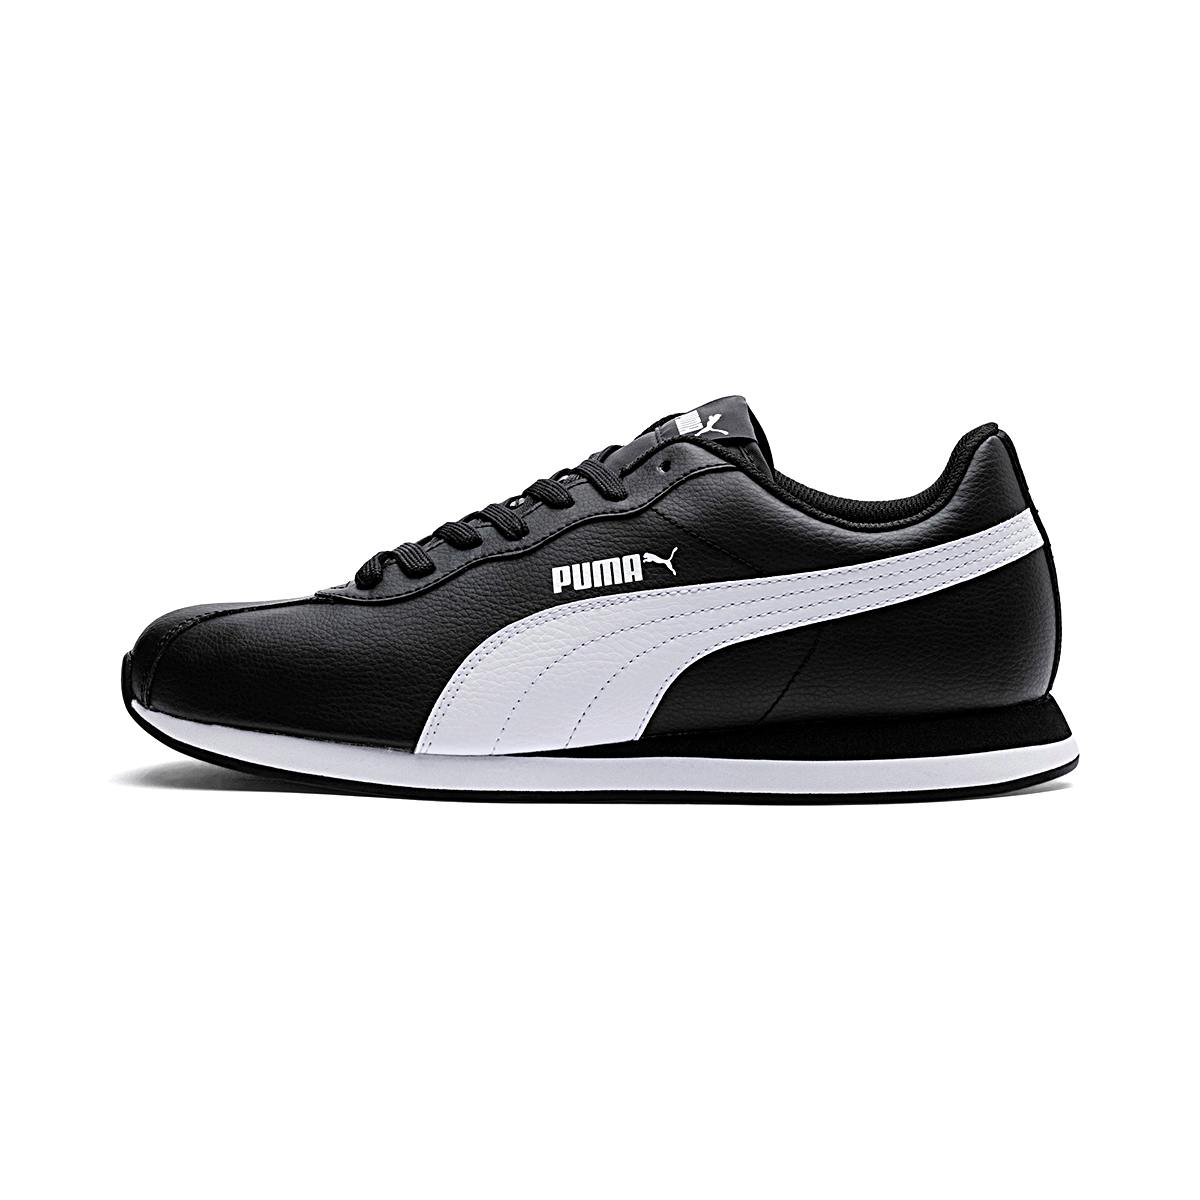 Puma Turin II Herren Sneaker Schuhe schwarz weiss 366962 01